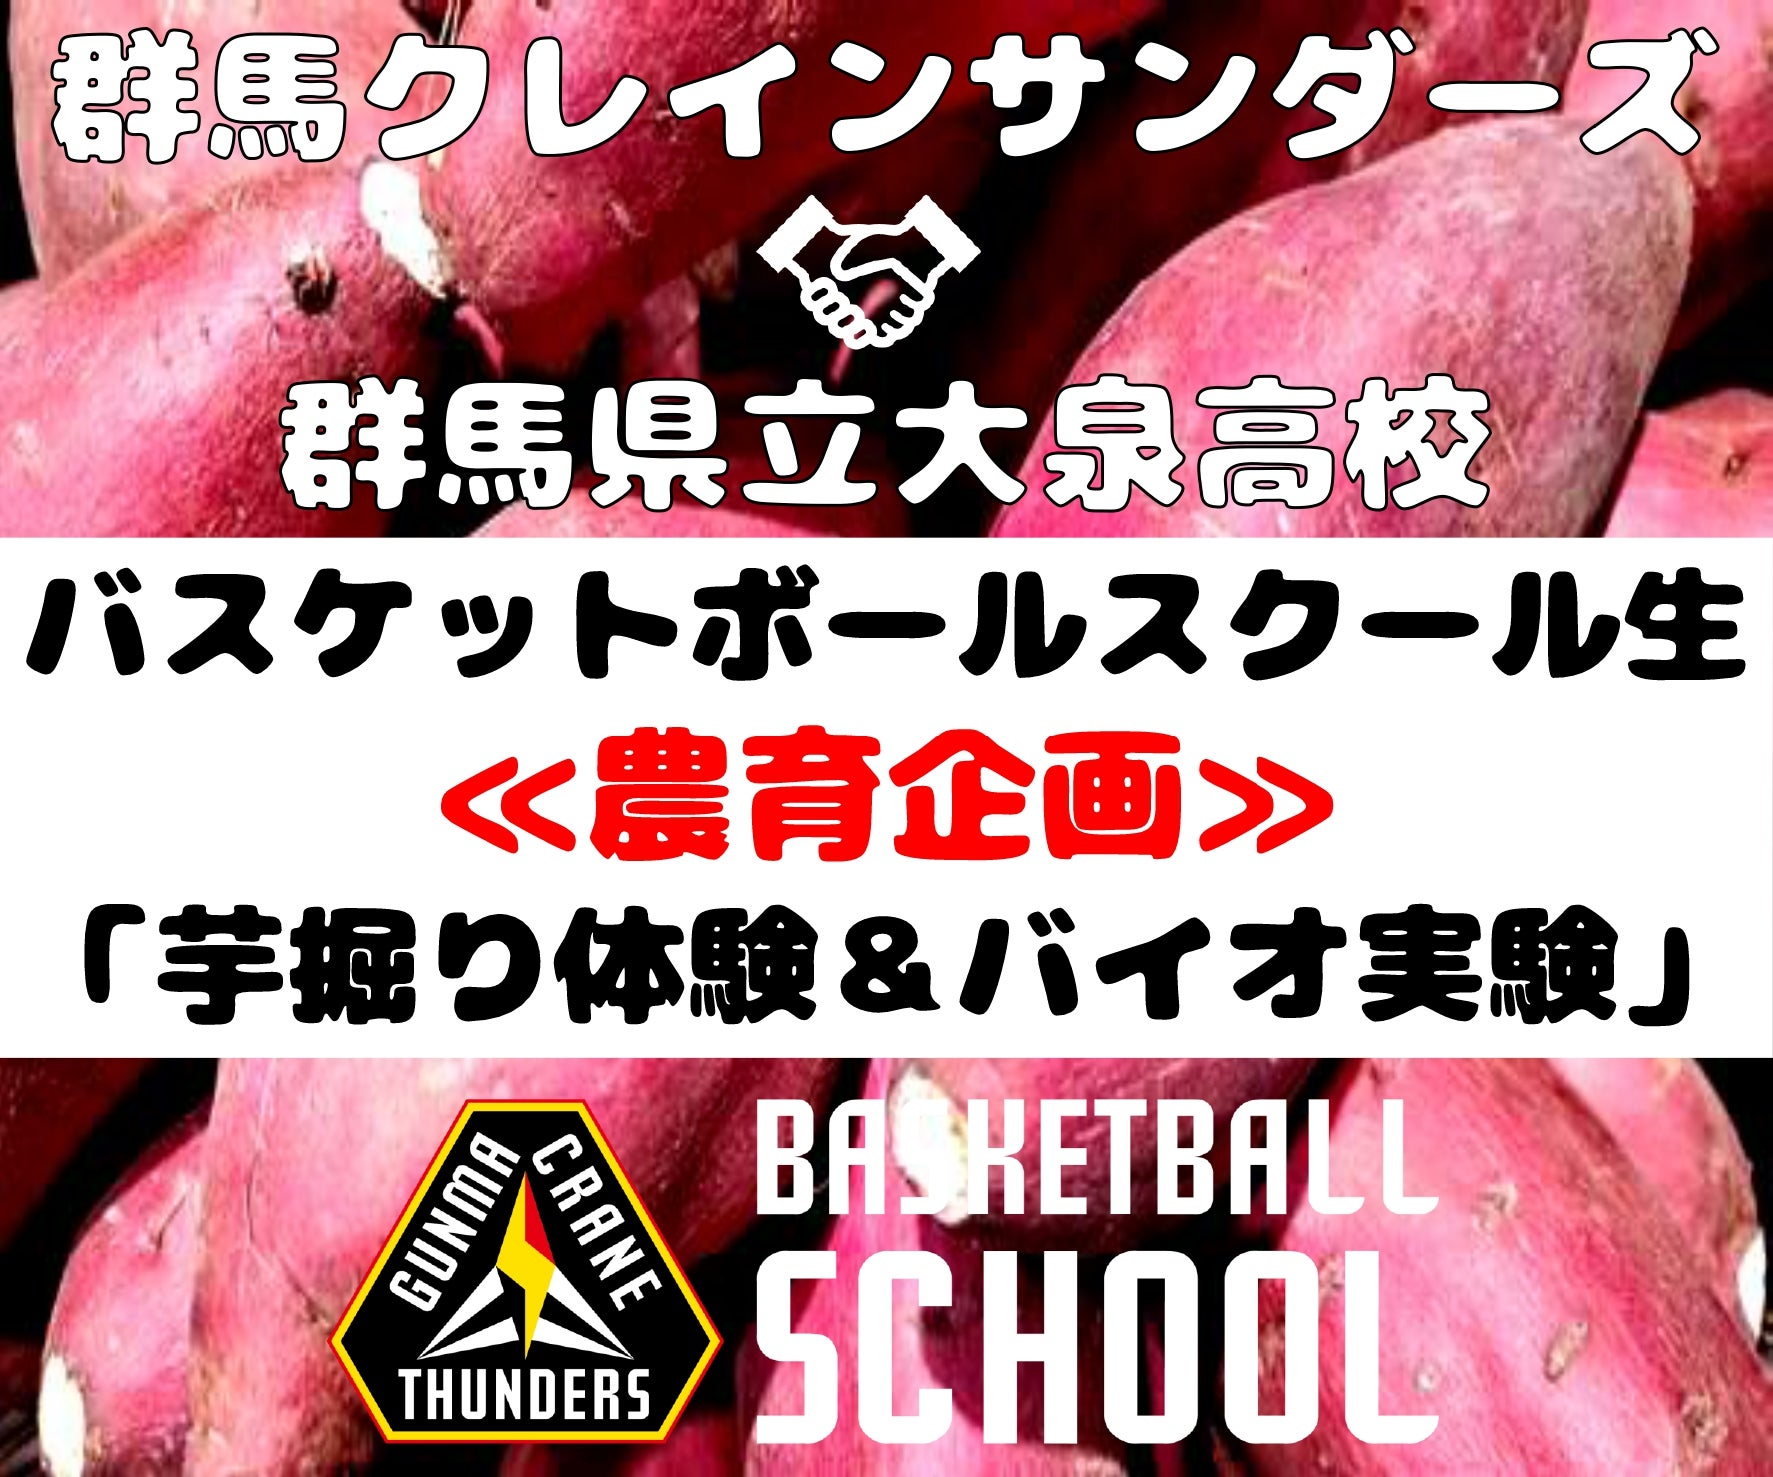 【活動報告】群馬県立大泉高校×バスケットボールスクール「農育企画」